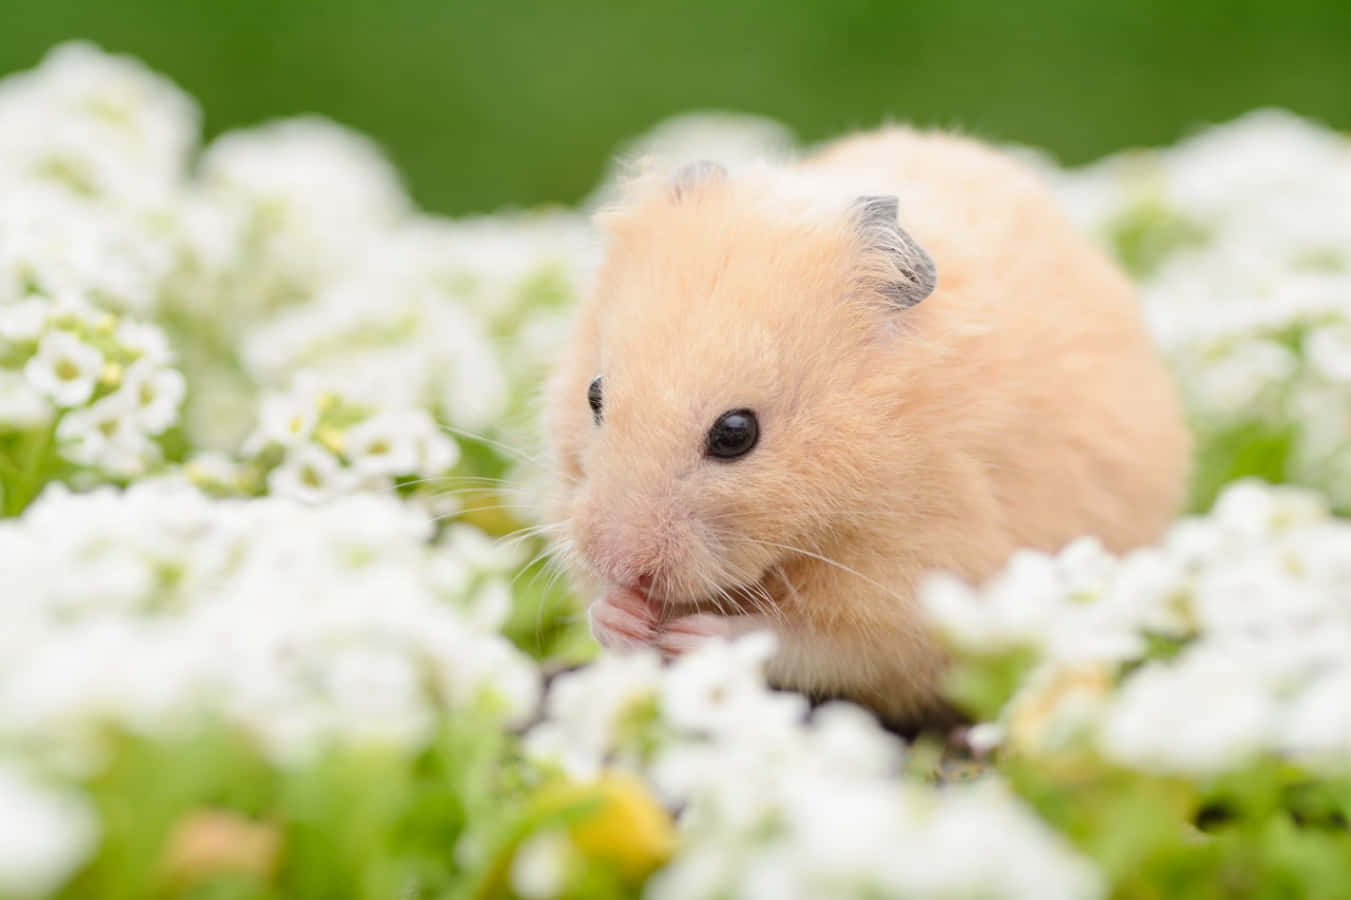 A cute hamster enjoying a tasty treat.